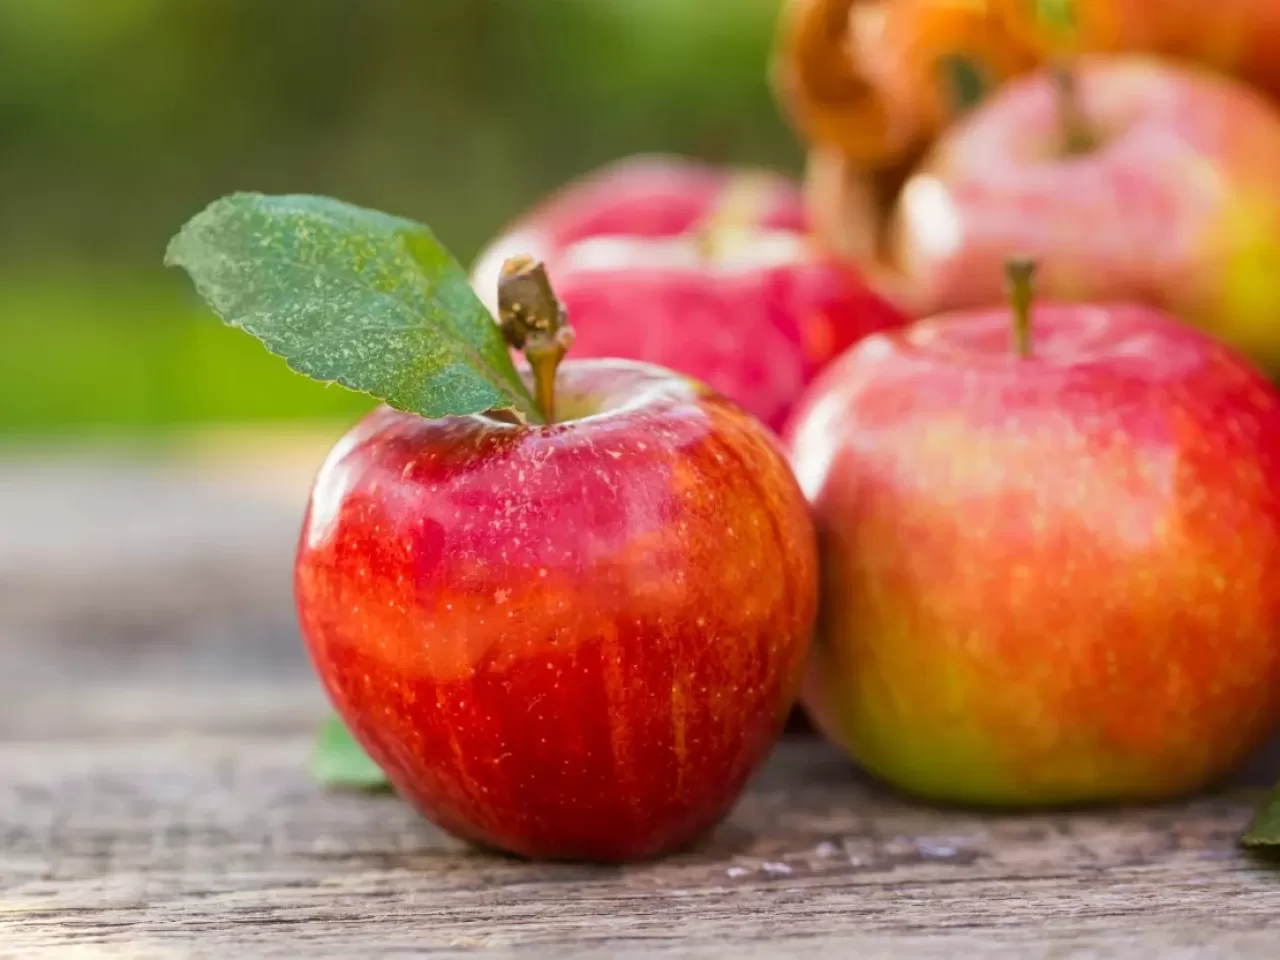 1 adet elma ile günü tok geçirin! Sürpriz elma tarifi hem kilo verdirecek hem de